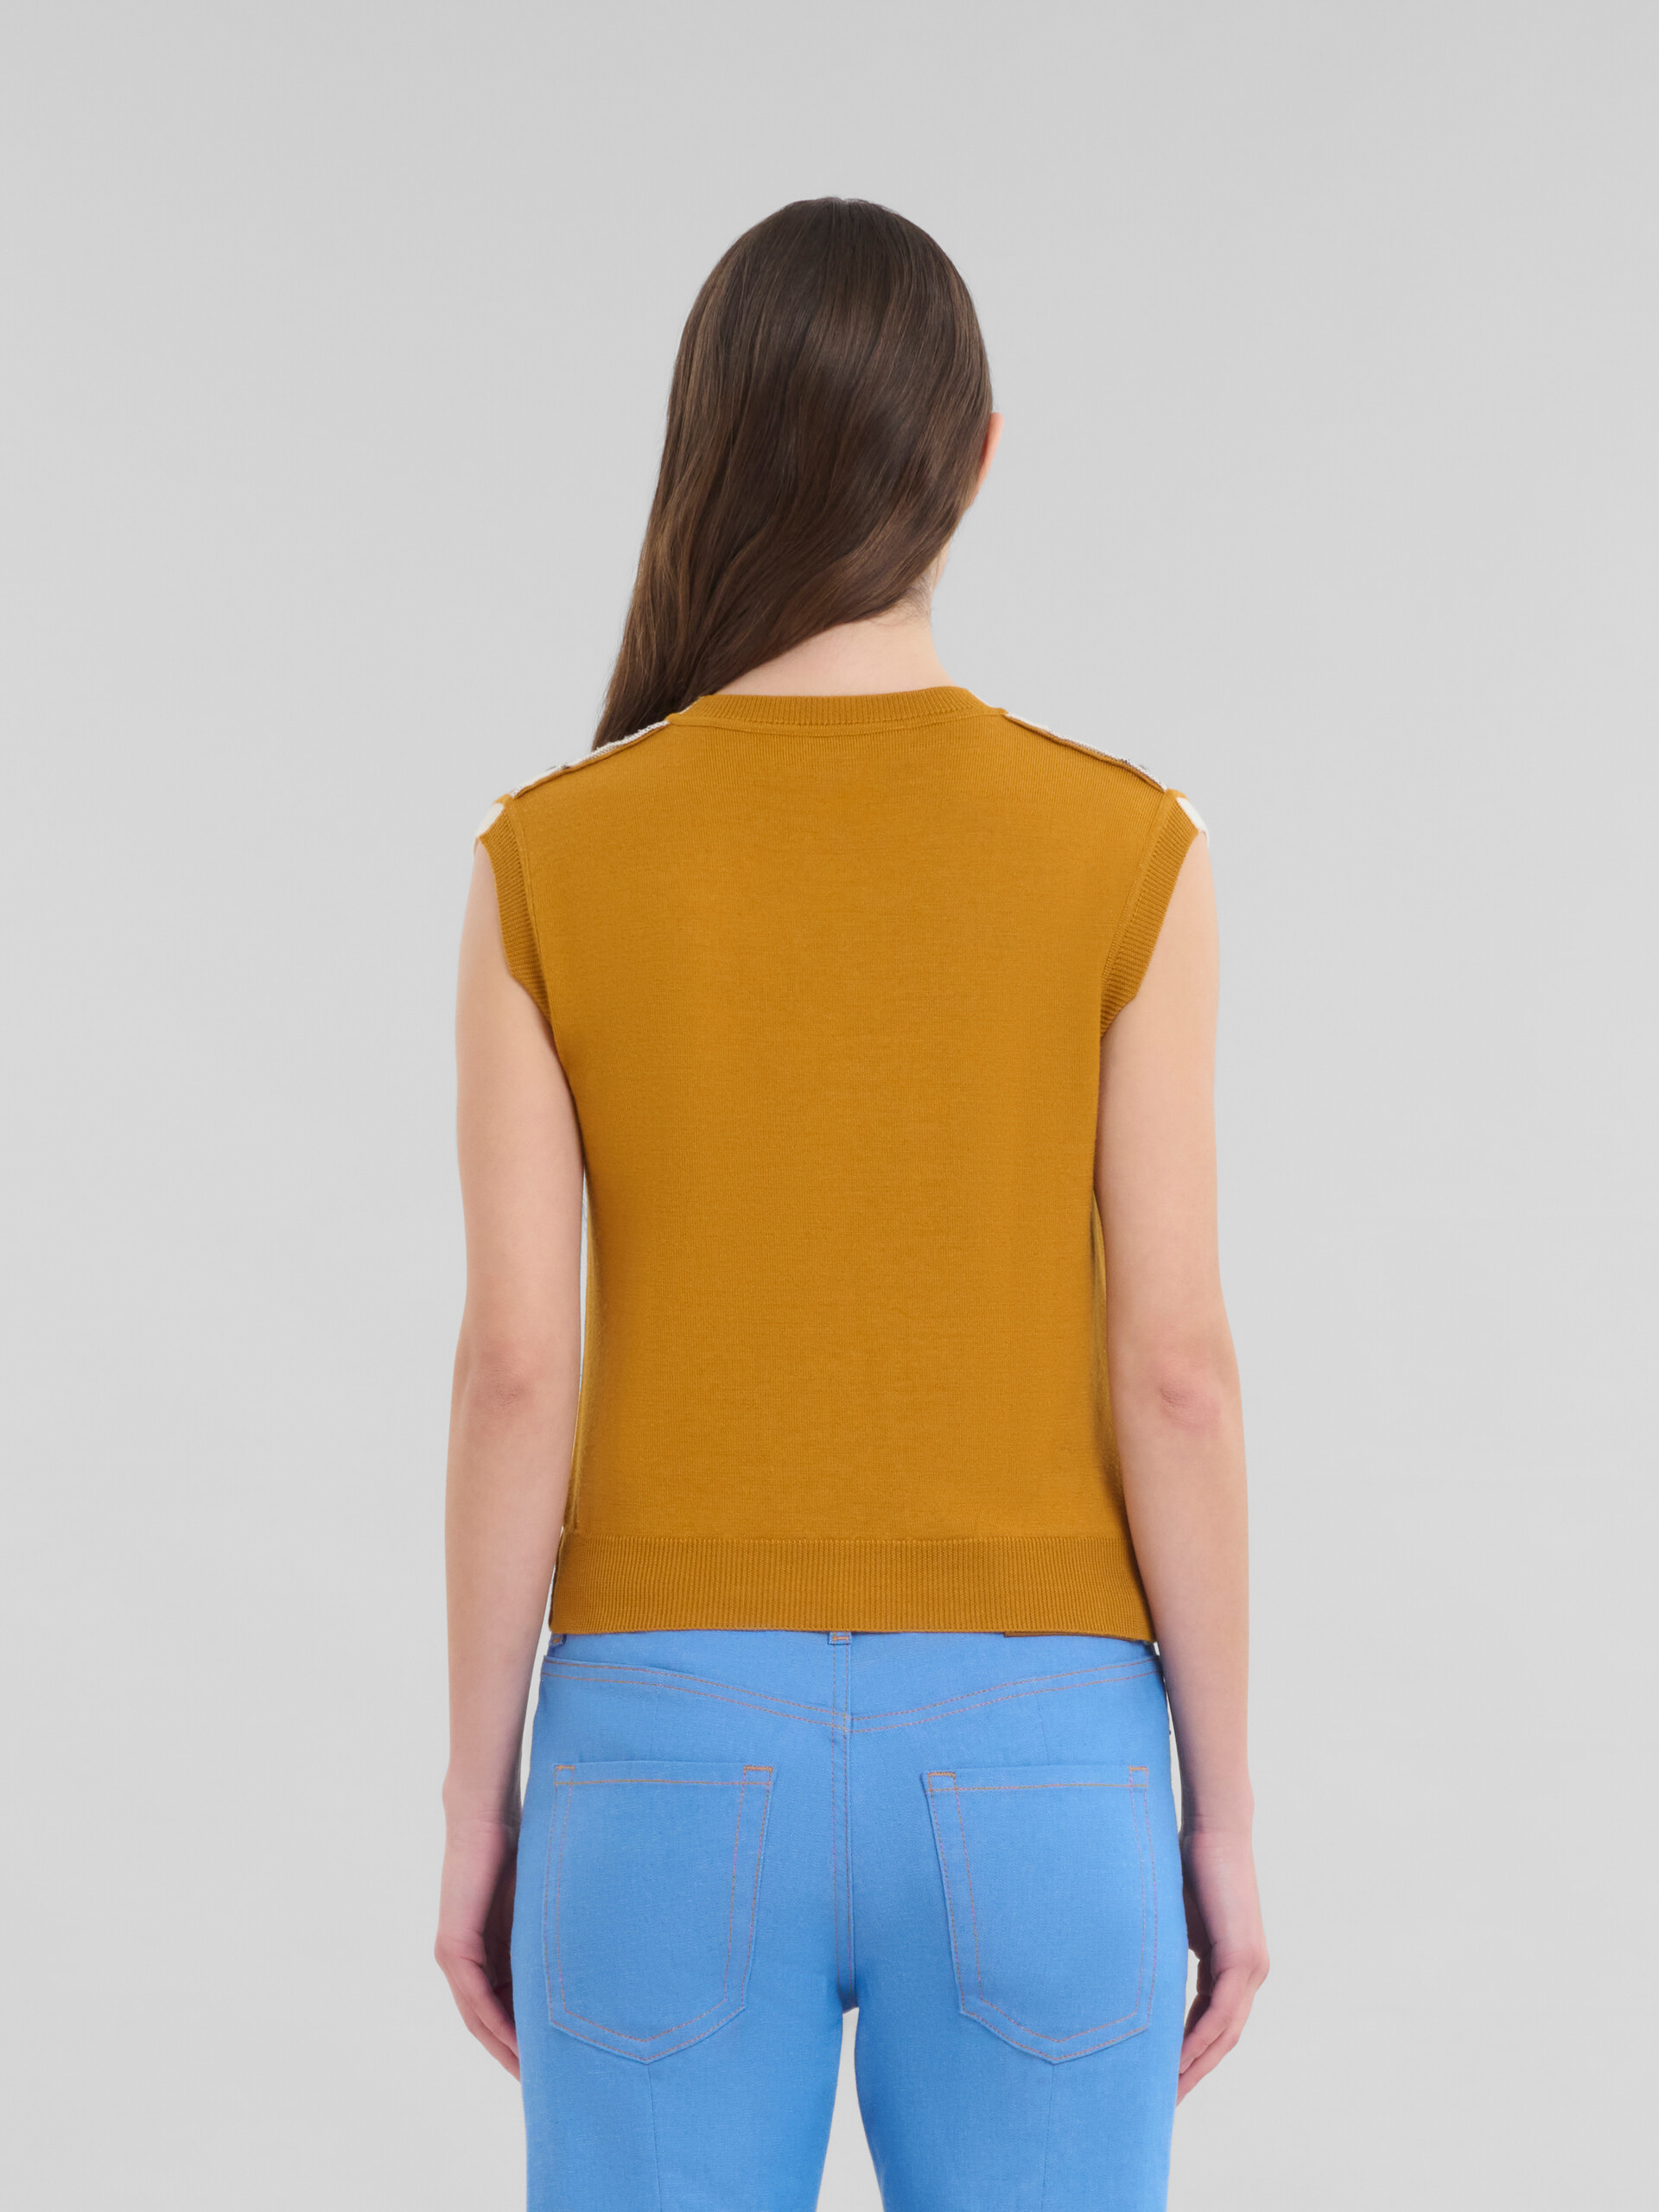 Gilet in lana con motivo a quadri arancioni e bianchi - Pullover - Image 3